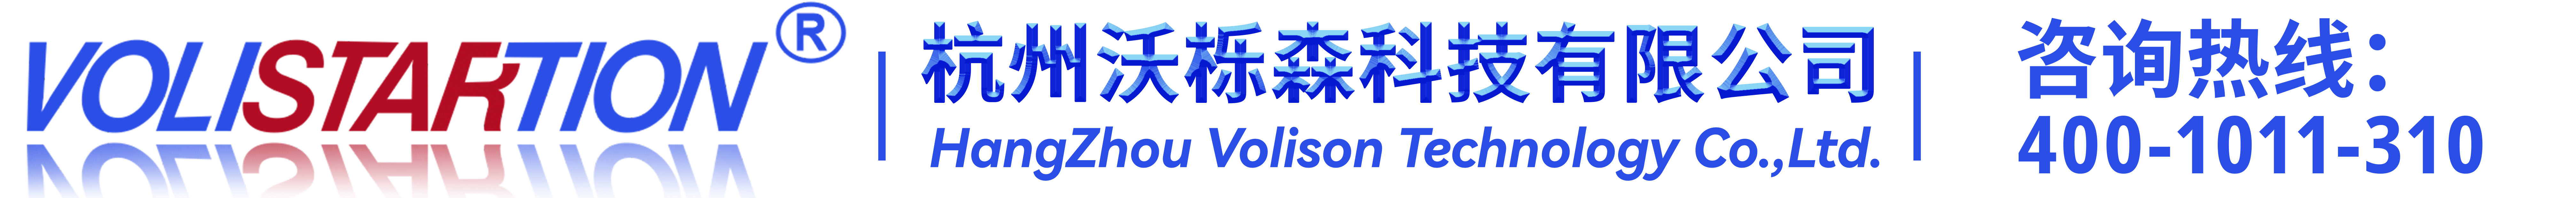 Hangzhou Volison Technology Co., Ltd. 